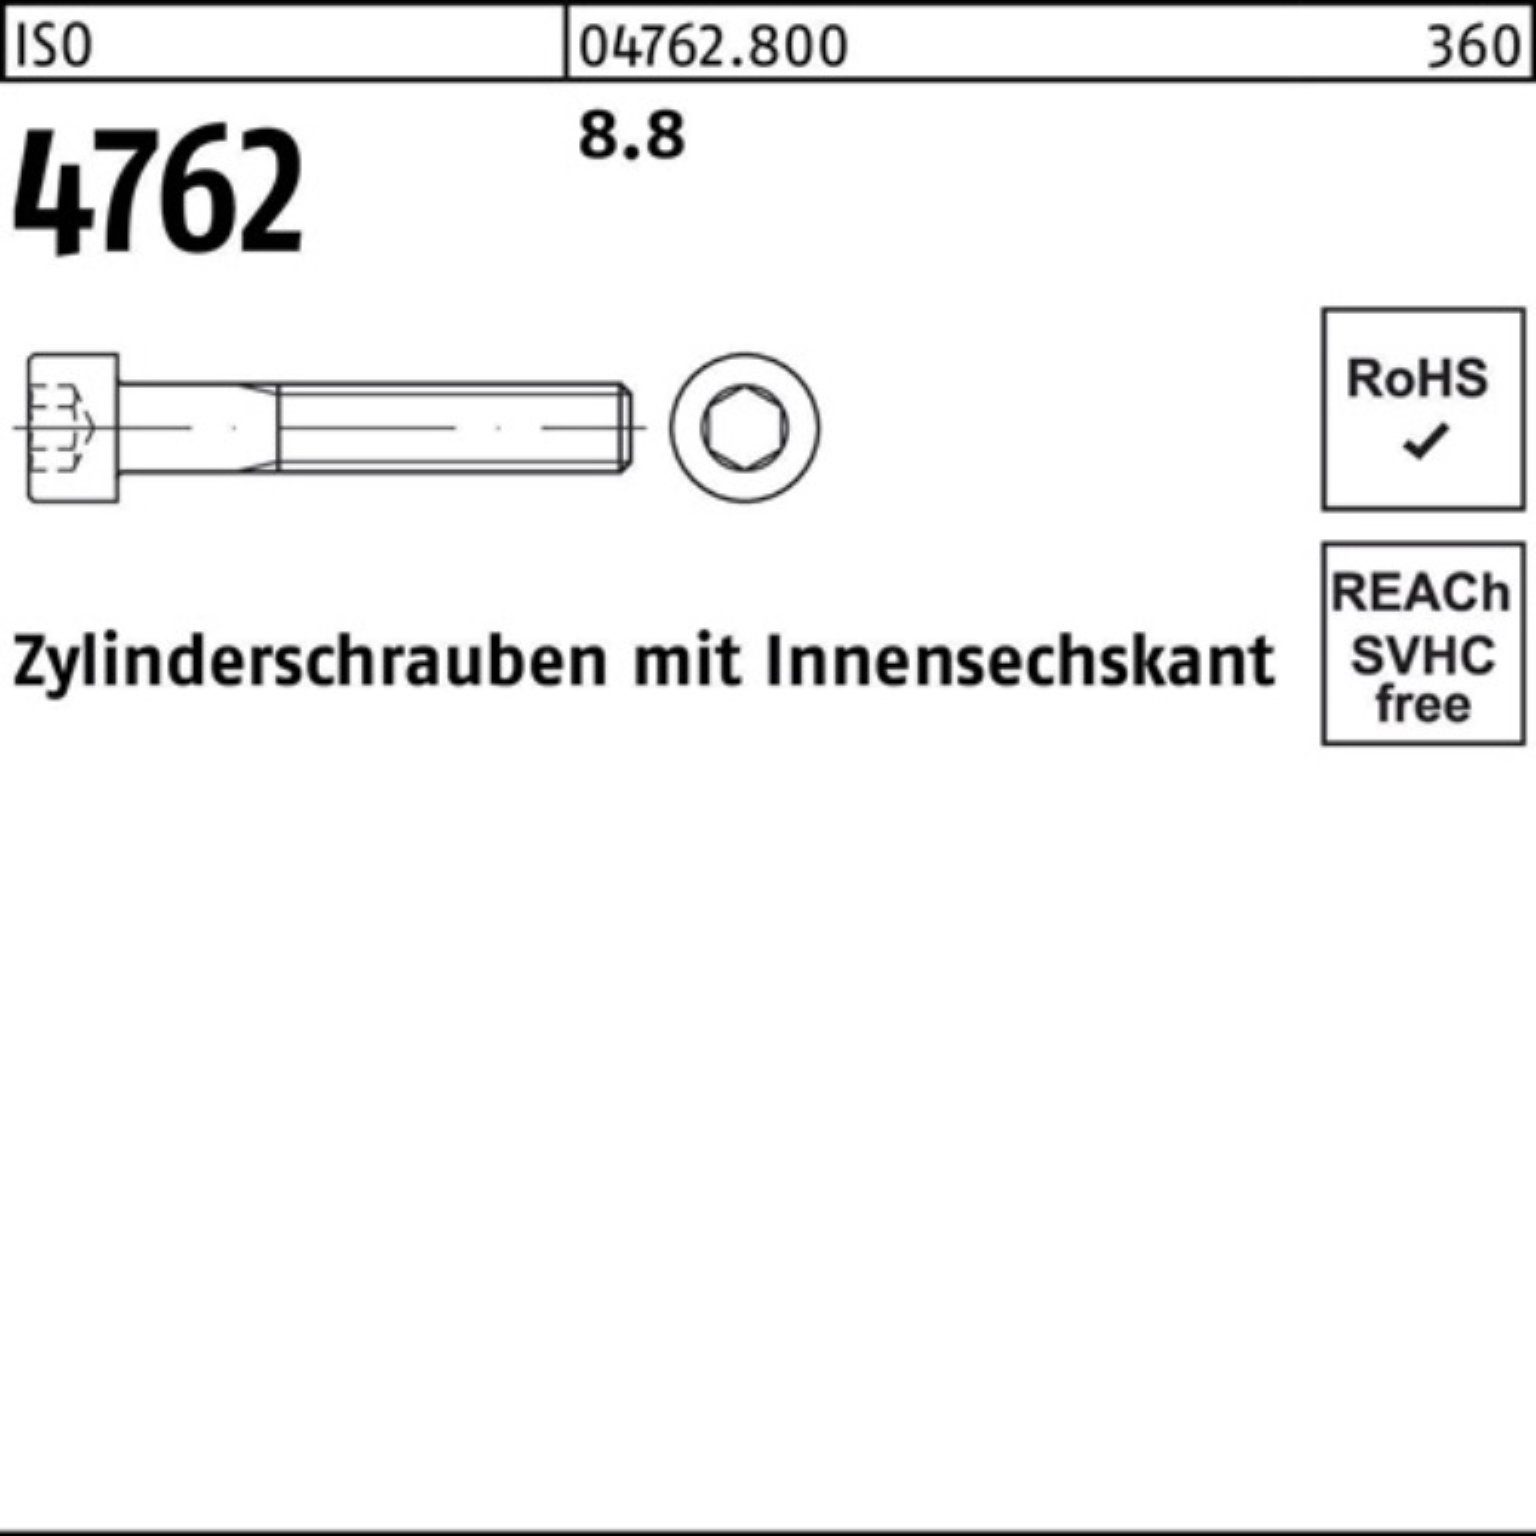 1 8.8 Zylinderschraube Innen-6kt 250 I ISO Stück M18x 4762 Zylinderschraube Reyher Pack 100er